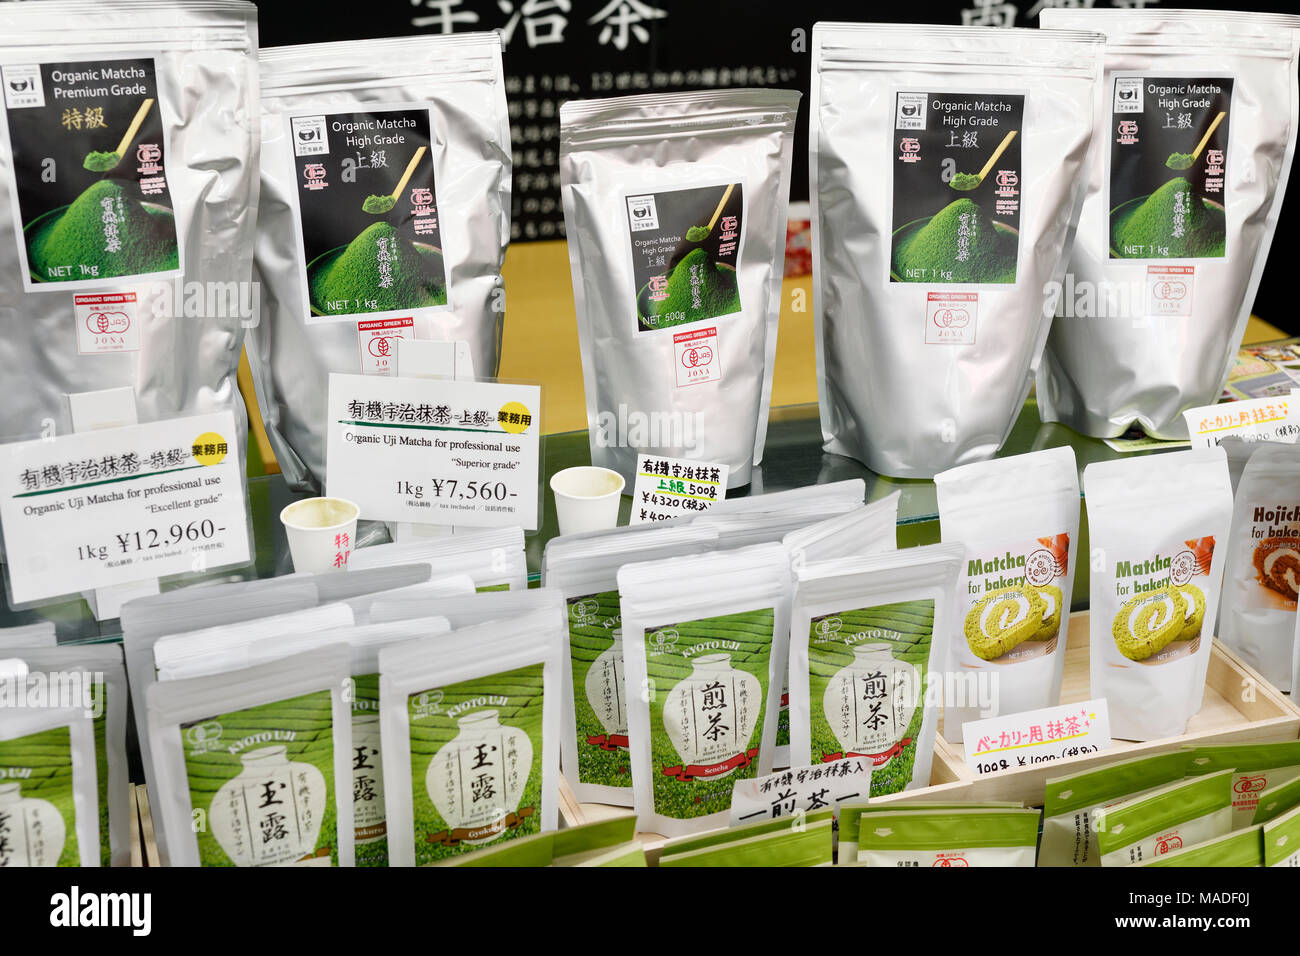 Avec des paquets de thé Matcha Uji organiques de différentes qualités en exposition dans un magasin. Excellent, cérémonial, supérieures et classes culinaires.Ce Japonais powd Banque D'Images